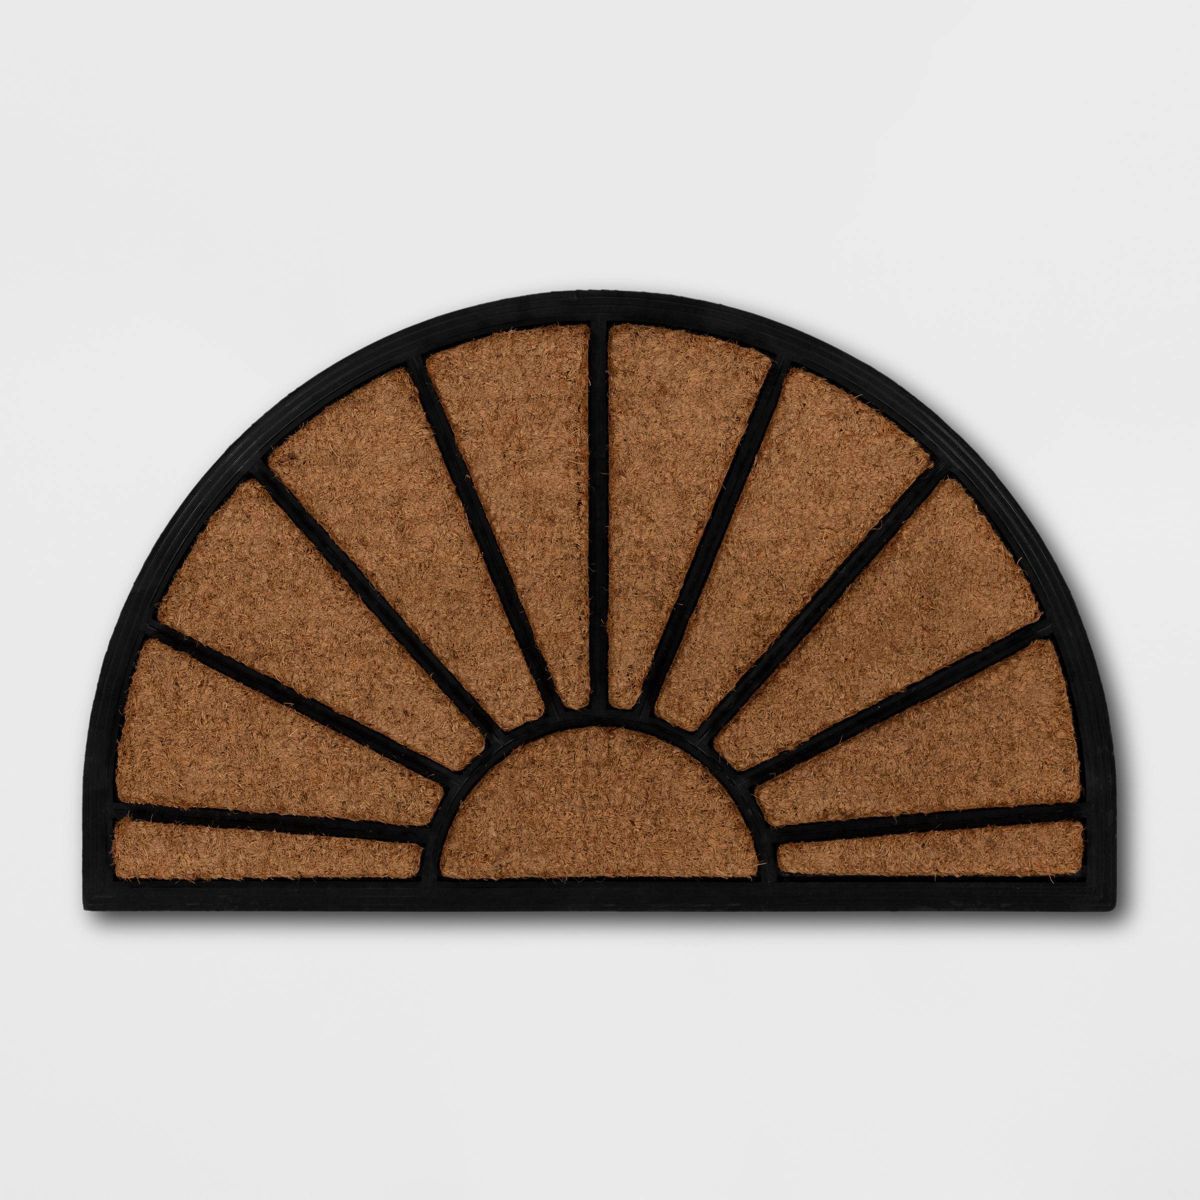 1'6"x2'6" Half Moon Rubber Coir Doormat Black - Threshold™ | Target